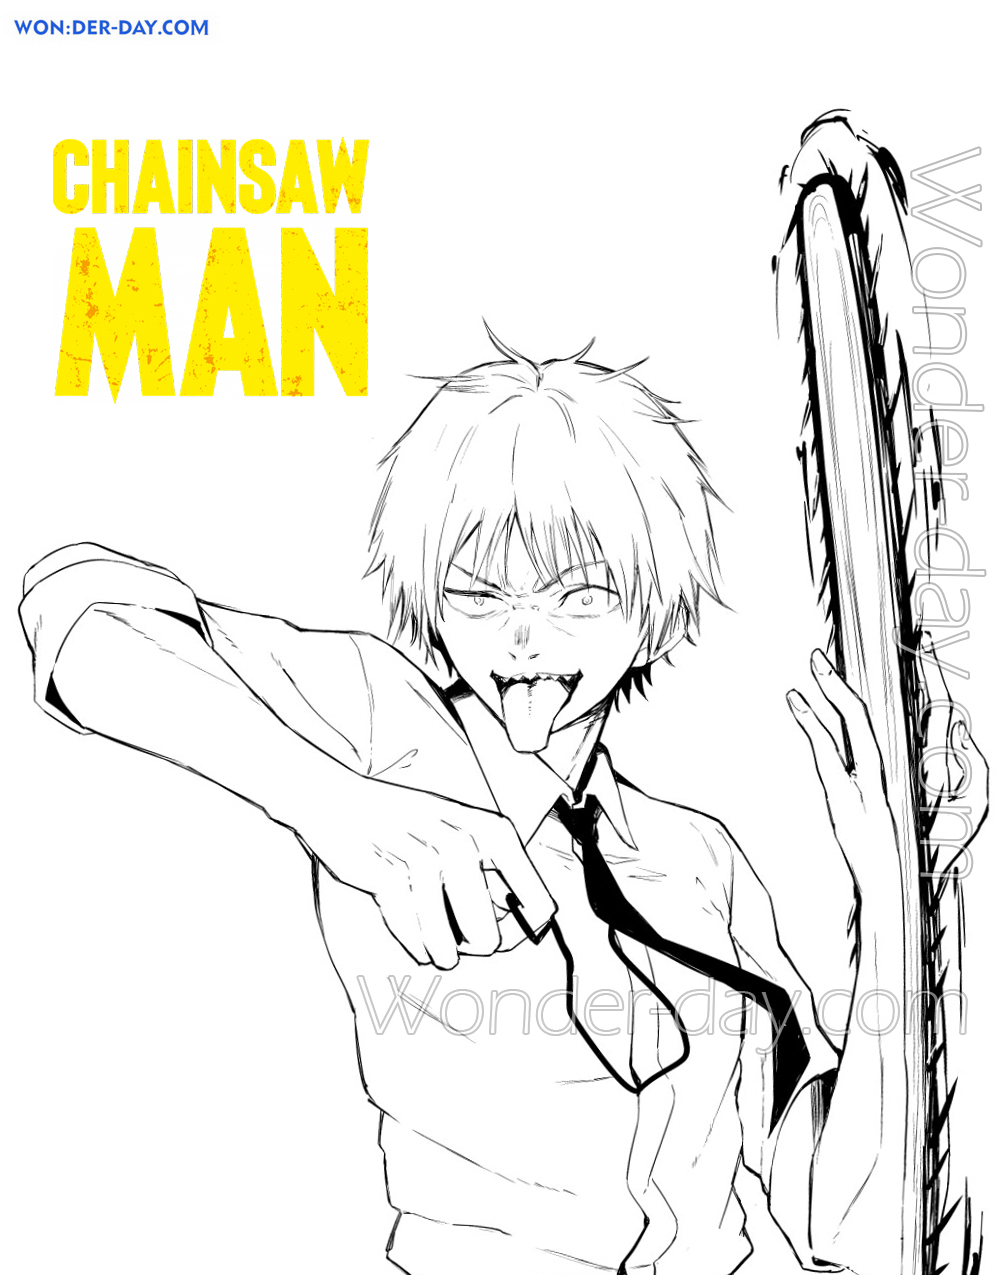 Desenhando ChainSaw Man  Страшные рисунки, Рисунки, Красочные картины